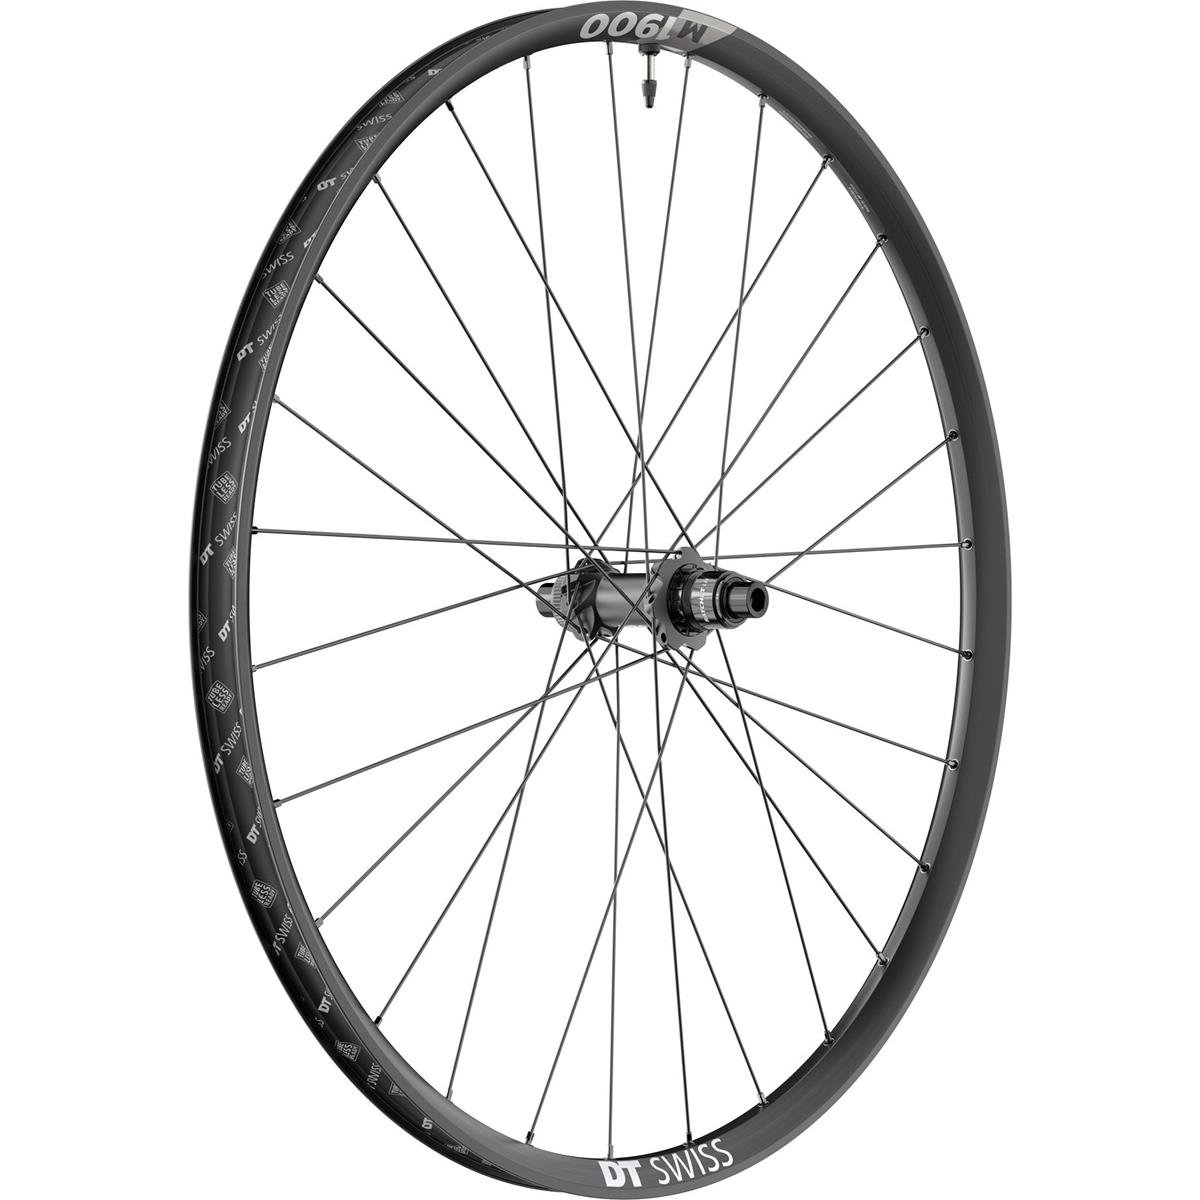 DT Swiss Wheel M 1900 Spline Rear, 27.5 Inches, Aluminum, sz, 12x148 mm TA Boost, Centerlock, 30 mm, SRAM XD